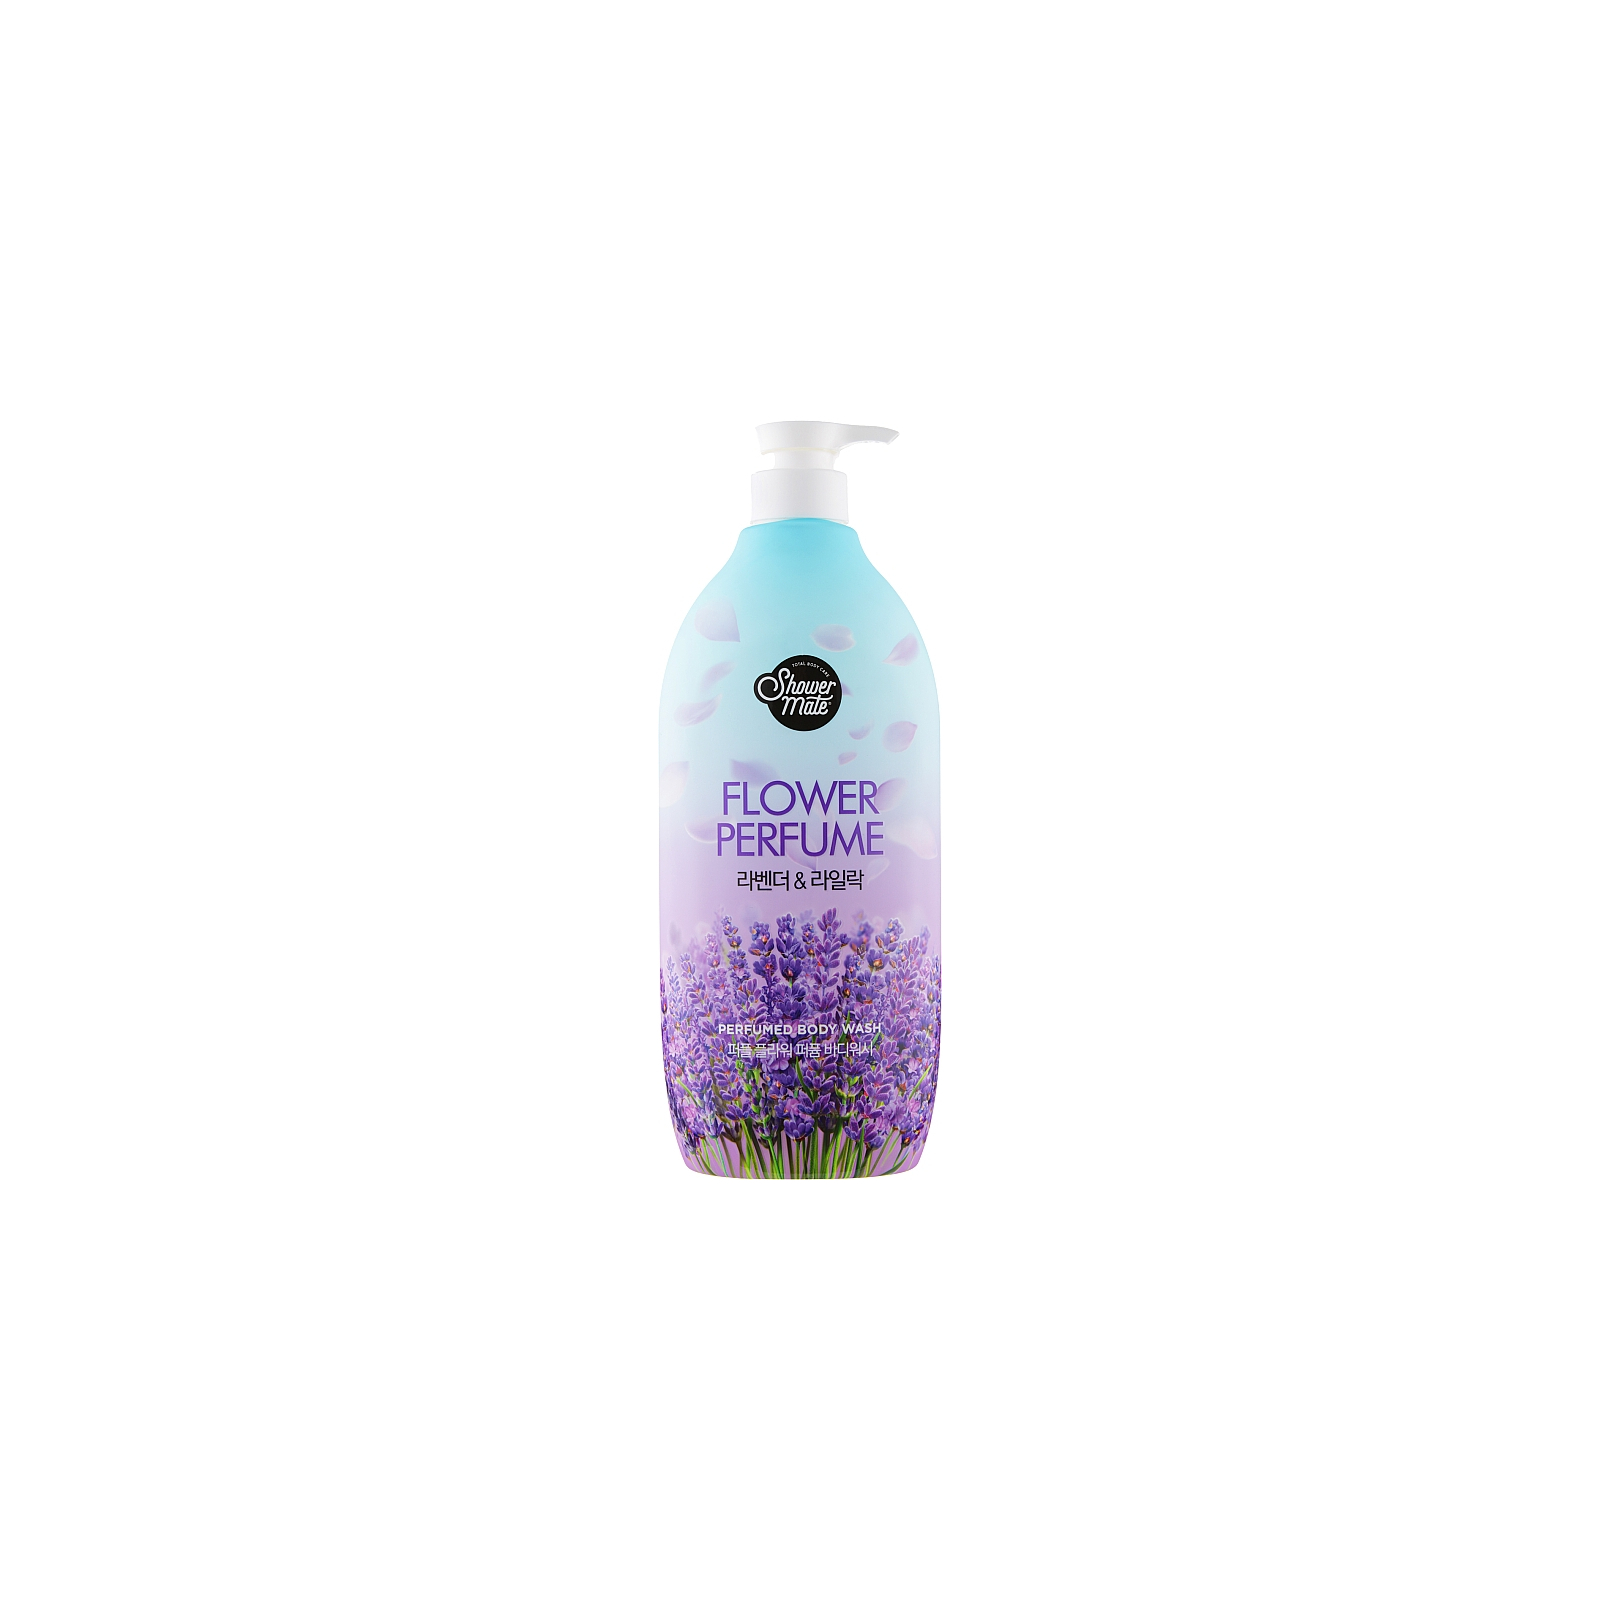 Гель для душа KeraSys Shower Mate Perfumed Lavender & Lilac 900 мл (8801046259870)